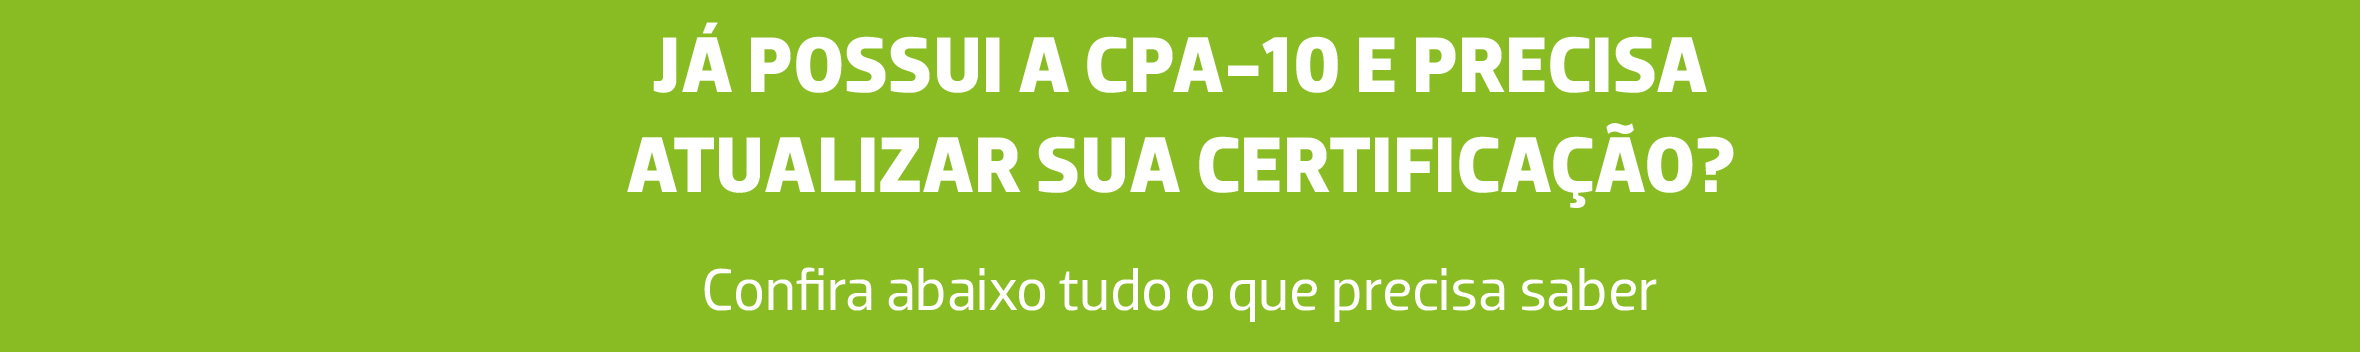 Imagem com o fundo verde e o texto já possui a CPA-10 e precisa atualizar sua certificação? Confira abaixo tudo o que precisa saber